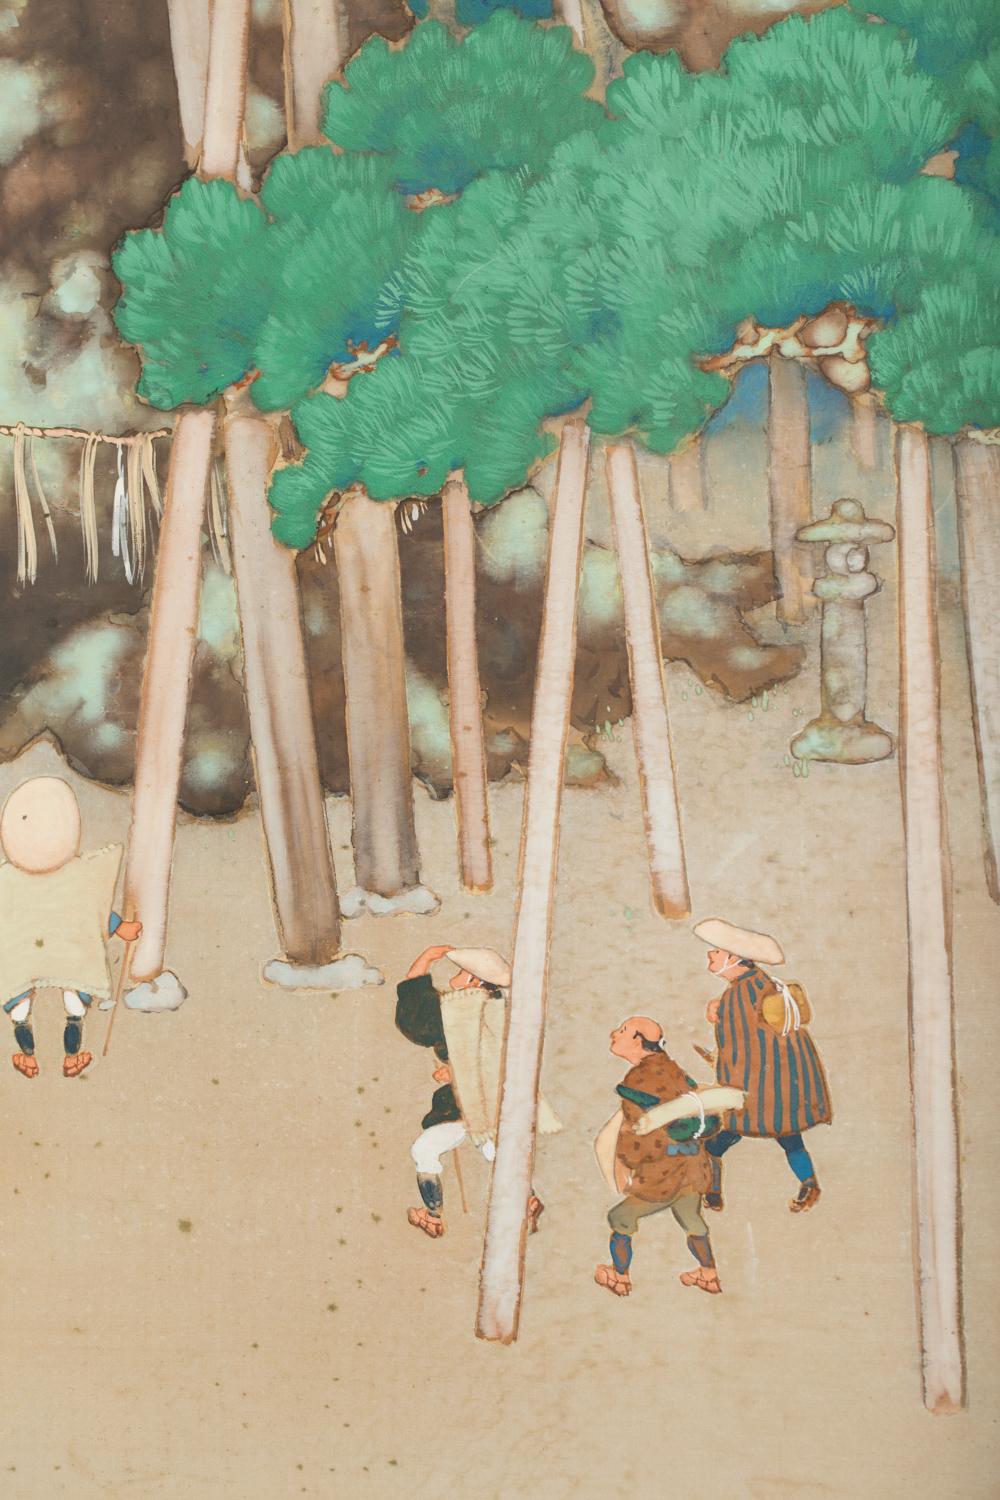 Vener-Kiefern, die von den Arboristen des Tempels gepflegt werden. Die Signatur des Künstlers lautet: Koka Sugibayashi. Gemälde aus der Meiji-Zeit (1868-1912) mit Mineralpigmenten auf Seide mit Seidenbrokatborte.